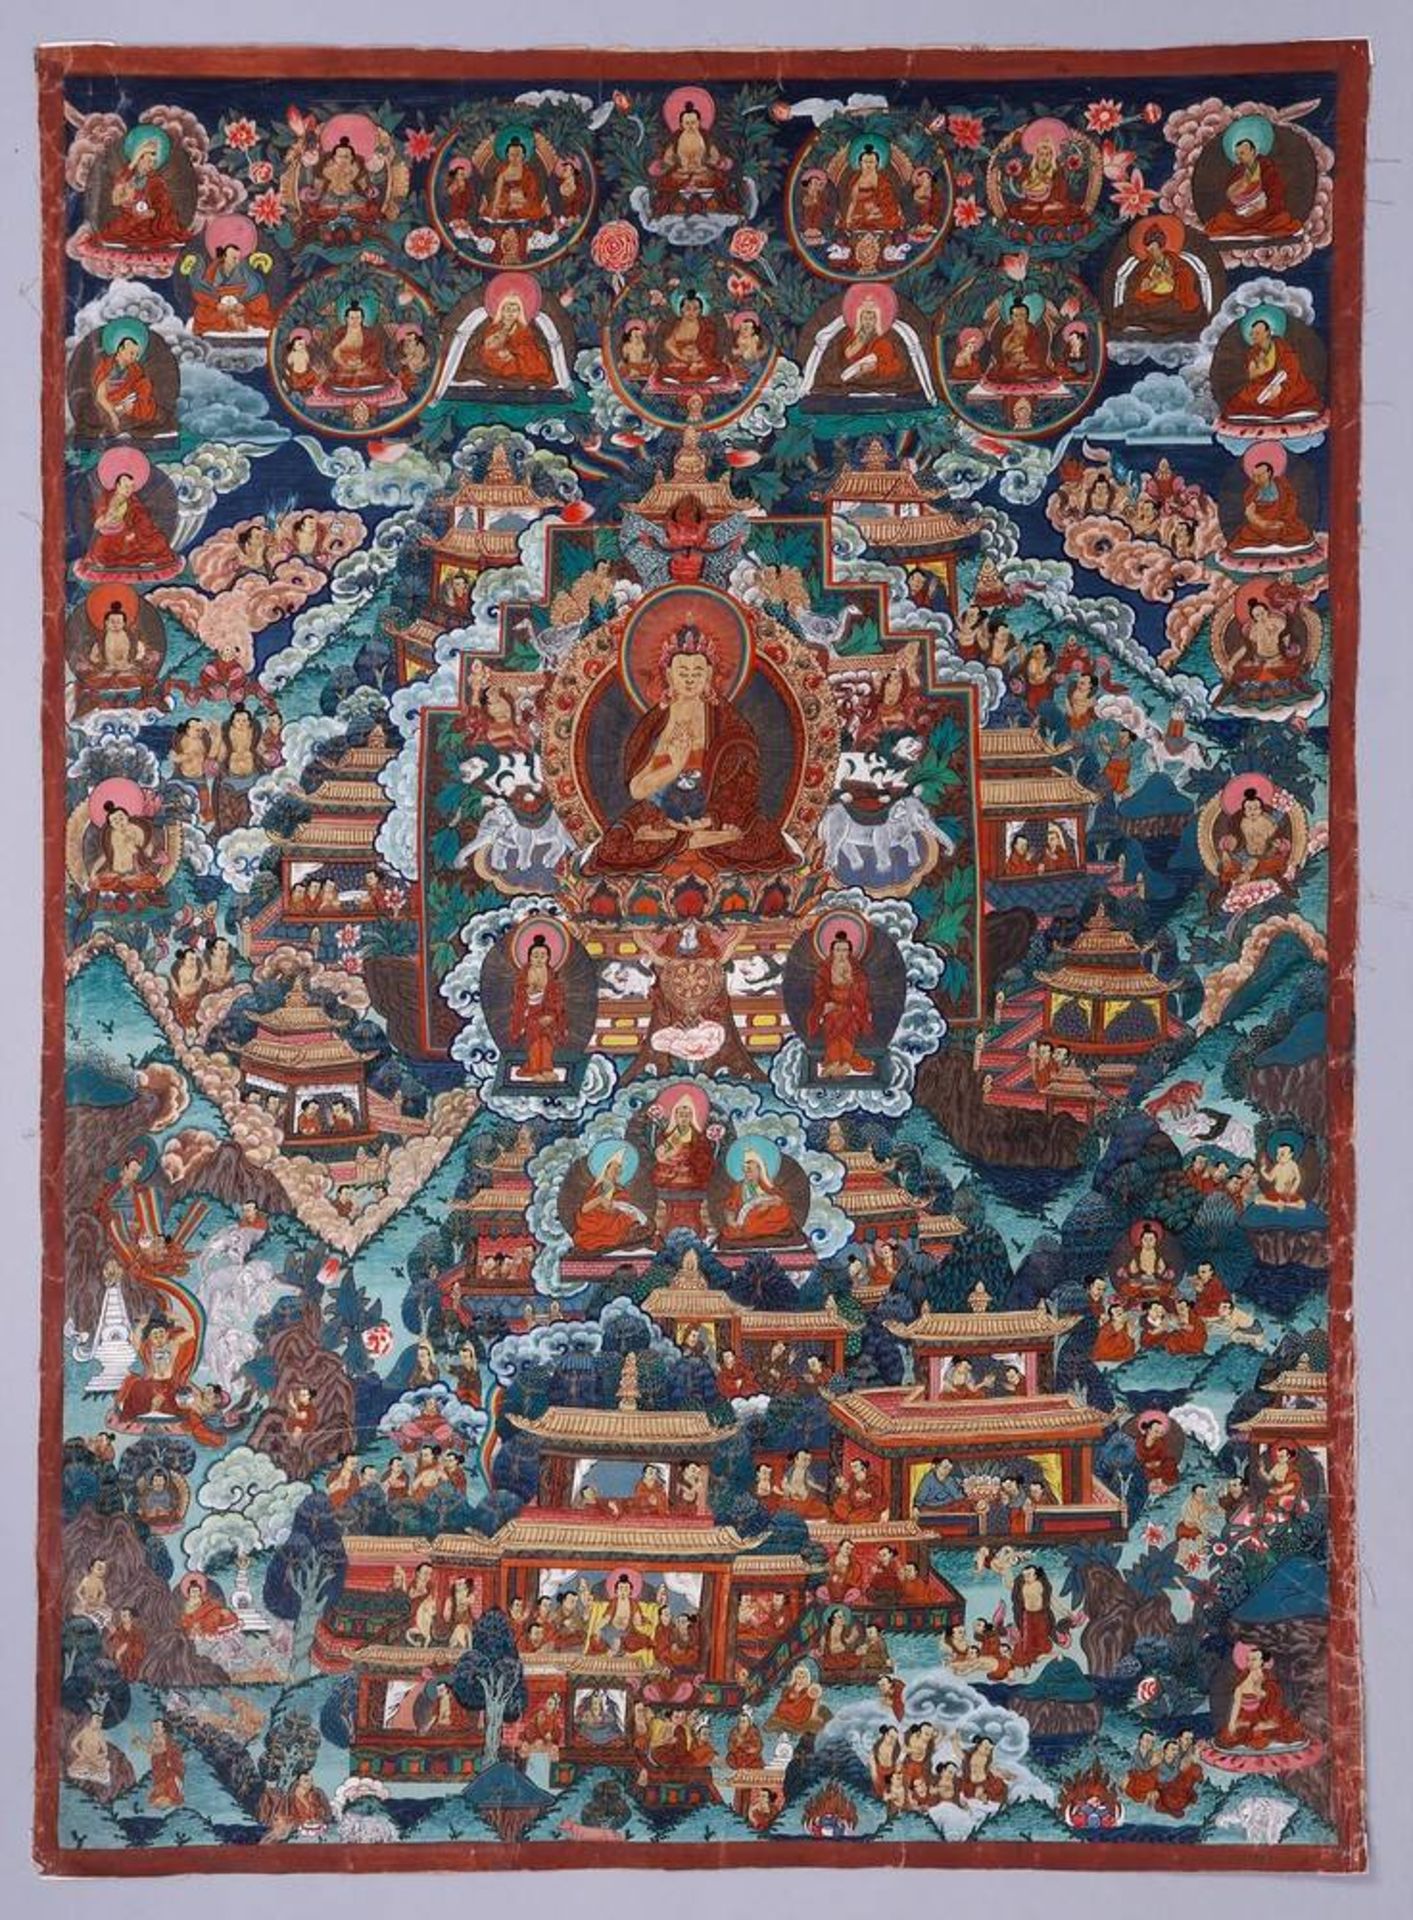 Großes Thangka, wohl Nepal/Tibet, 1. H. 20.Jh. im Zentralfeld sitzender Buddha, umgeben von